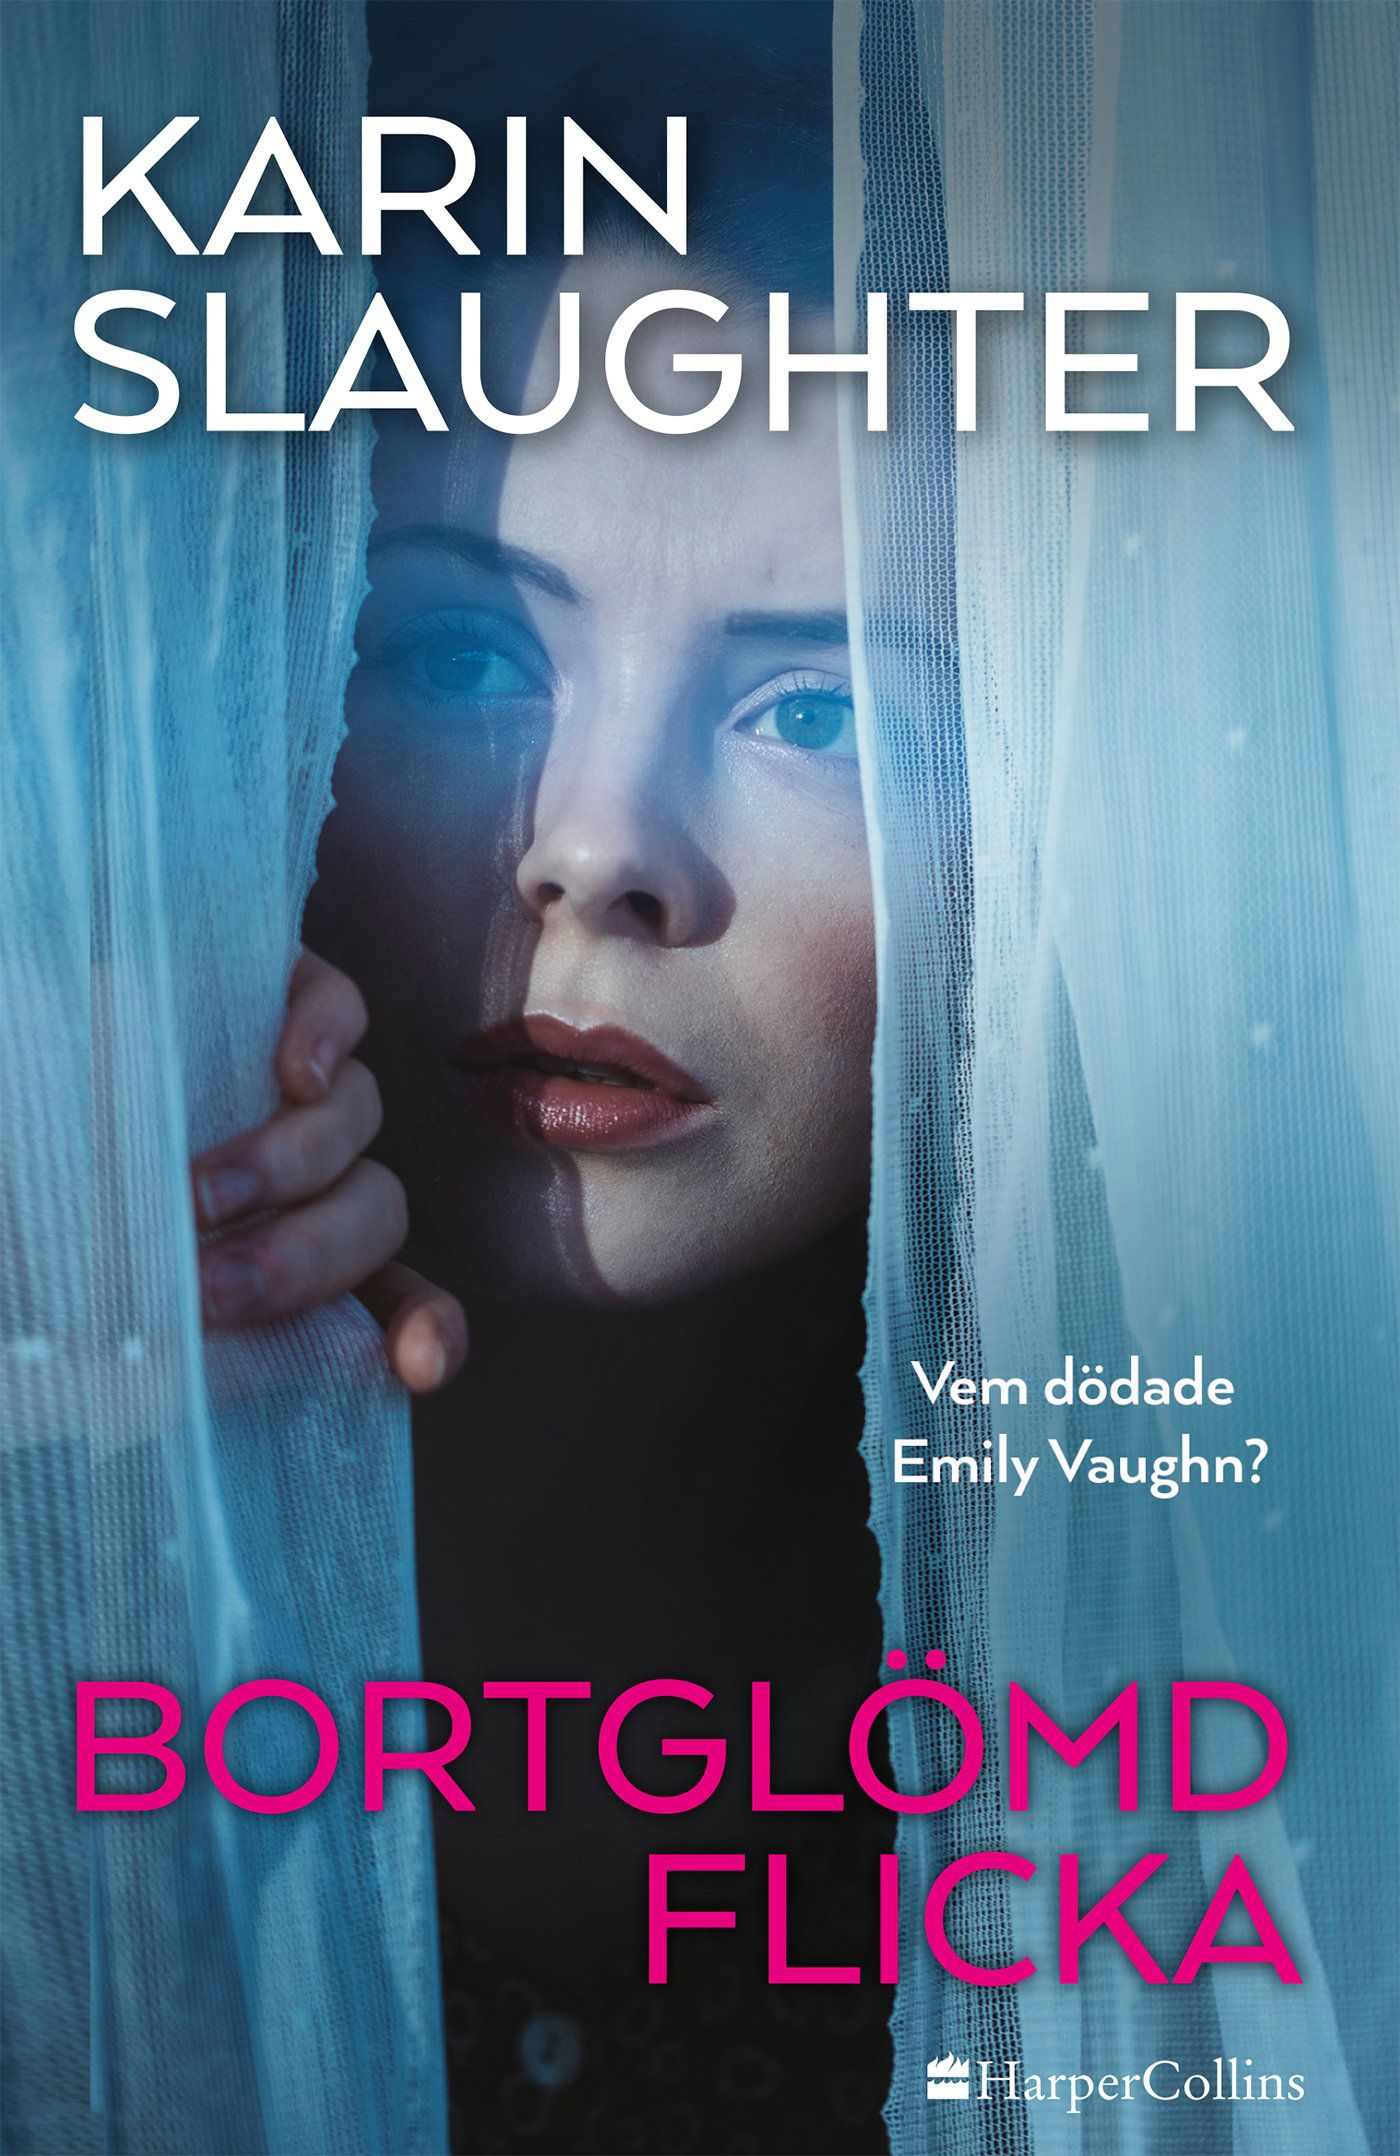 Bortglömd flicka, e-bok av Karin Slaughter